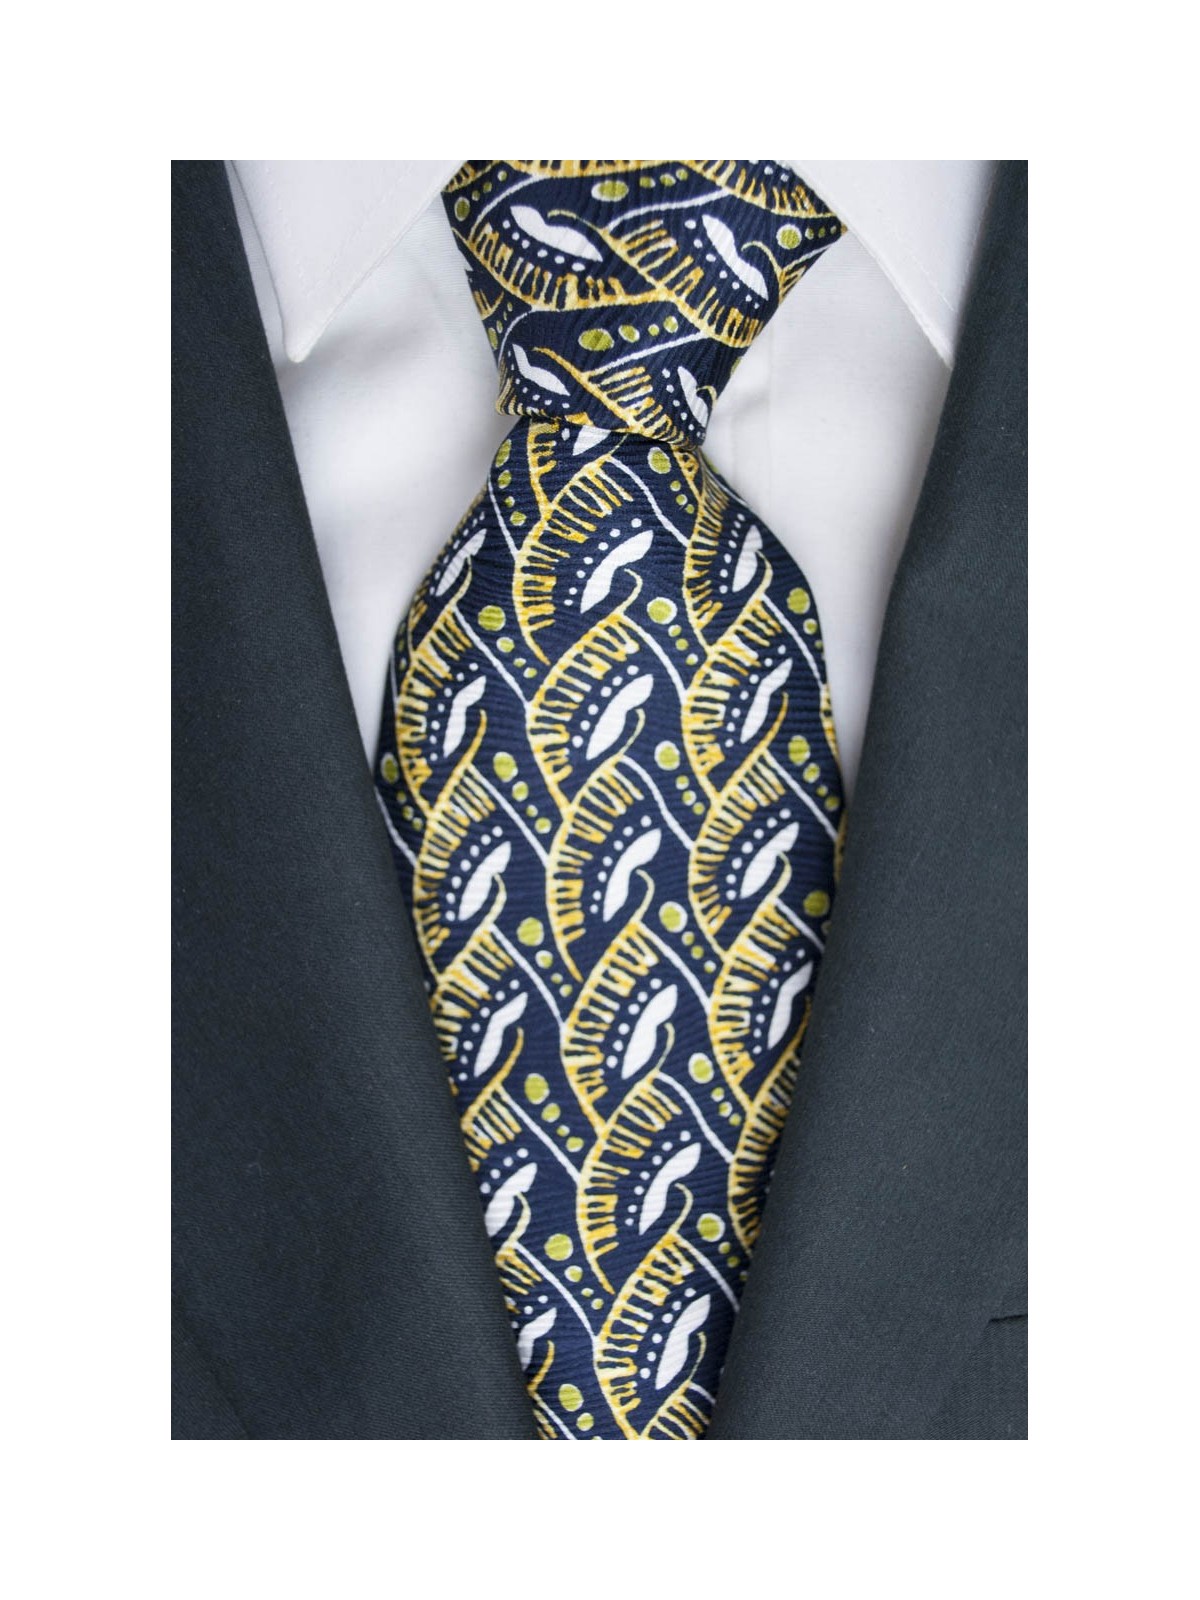 Krawatte Oliver Valentino-Blau Fantasie-Gelb und Weiß - 100% Reine Seide